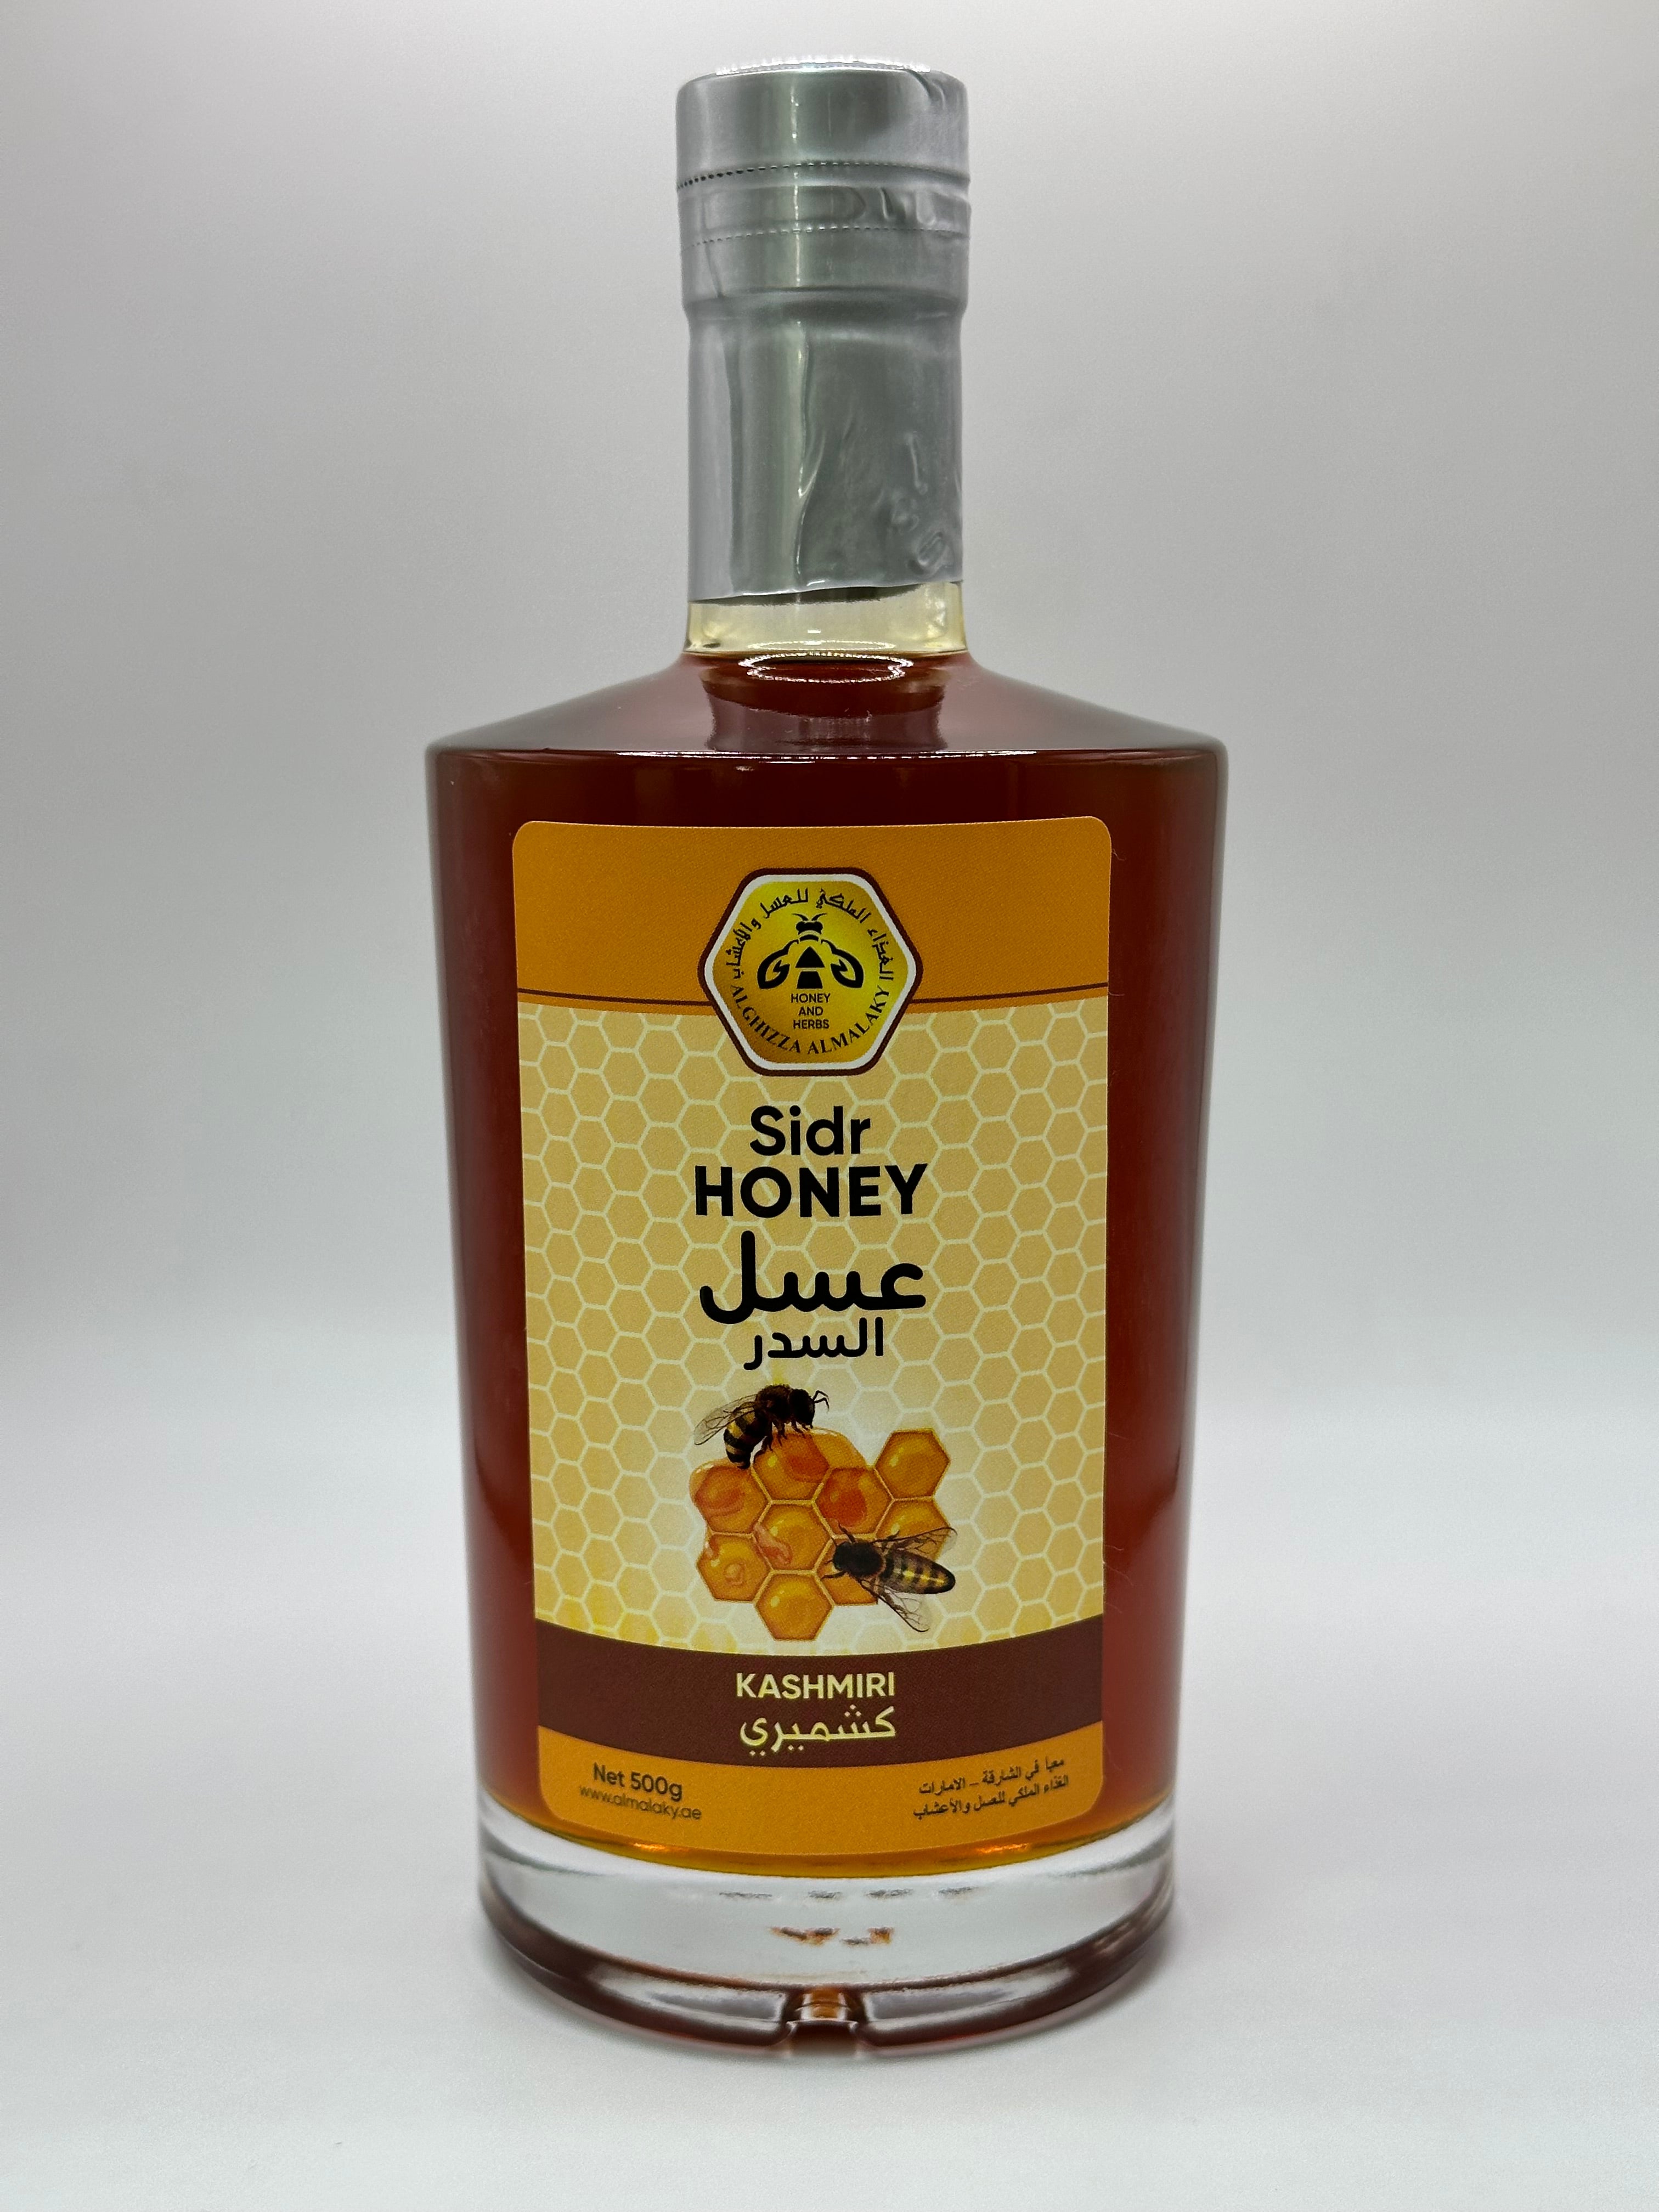 زجاجة عسل السدر الكشميري بحجم 500 غرام، تظهر الزجاجة الطويلة والأنيقة بلونها العنبري الغامق وملصق يحمل اسم المنتج ومنشأه